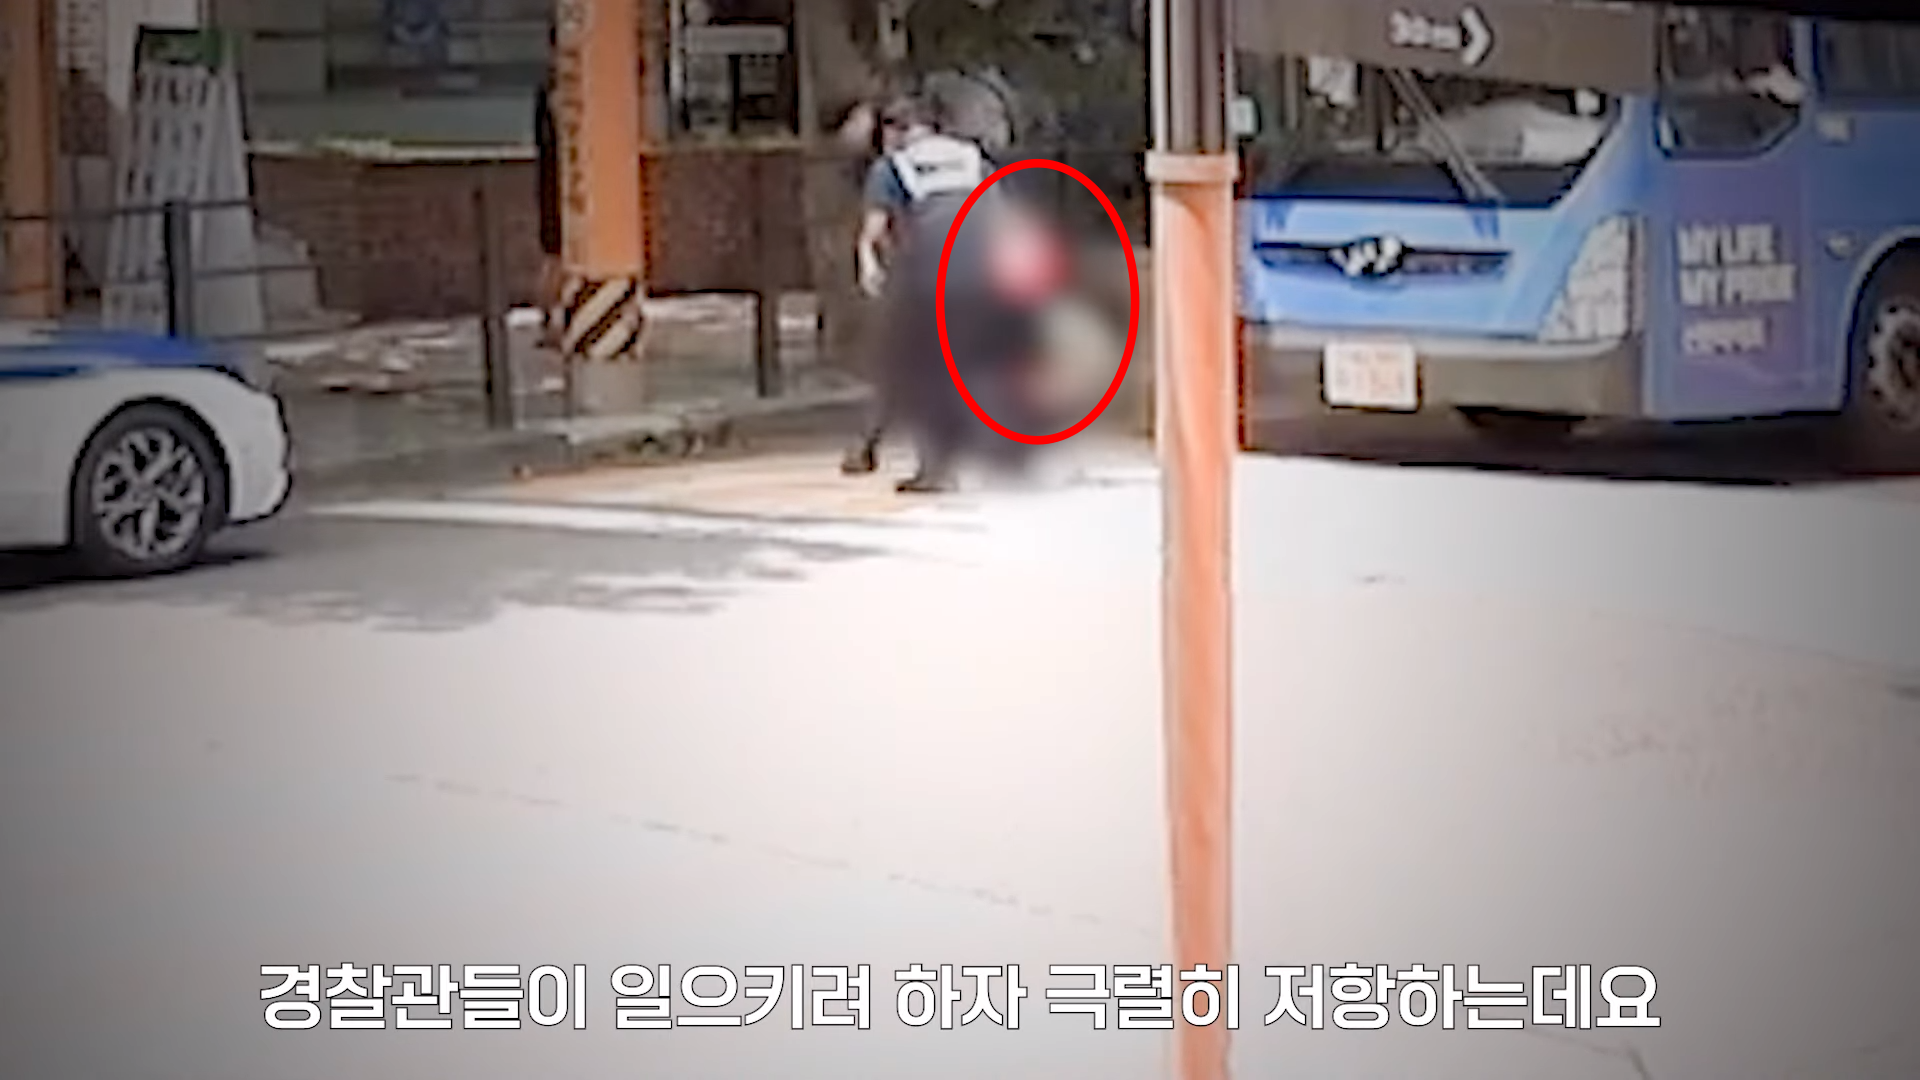 지난달 31일 서울 용산구 도로에서 신호 대기 중이던 버스 앞에서 한 여성이 “문을 열어달라”며 난동을 부렸다. 이 여성은 신호가 파란불로 바뀌었음에도 버스 앞을 가로막고 항의했다. 경찰이 여성을 일으키는 장면. 서울경찰 유튜브